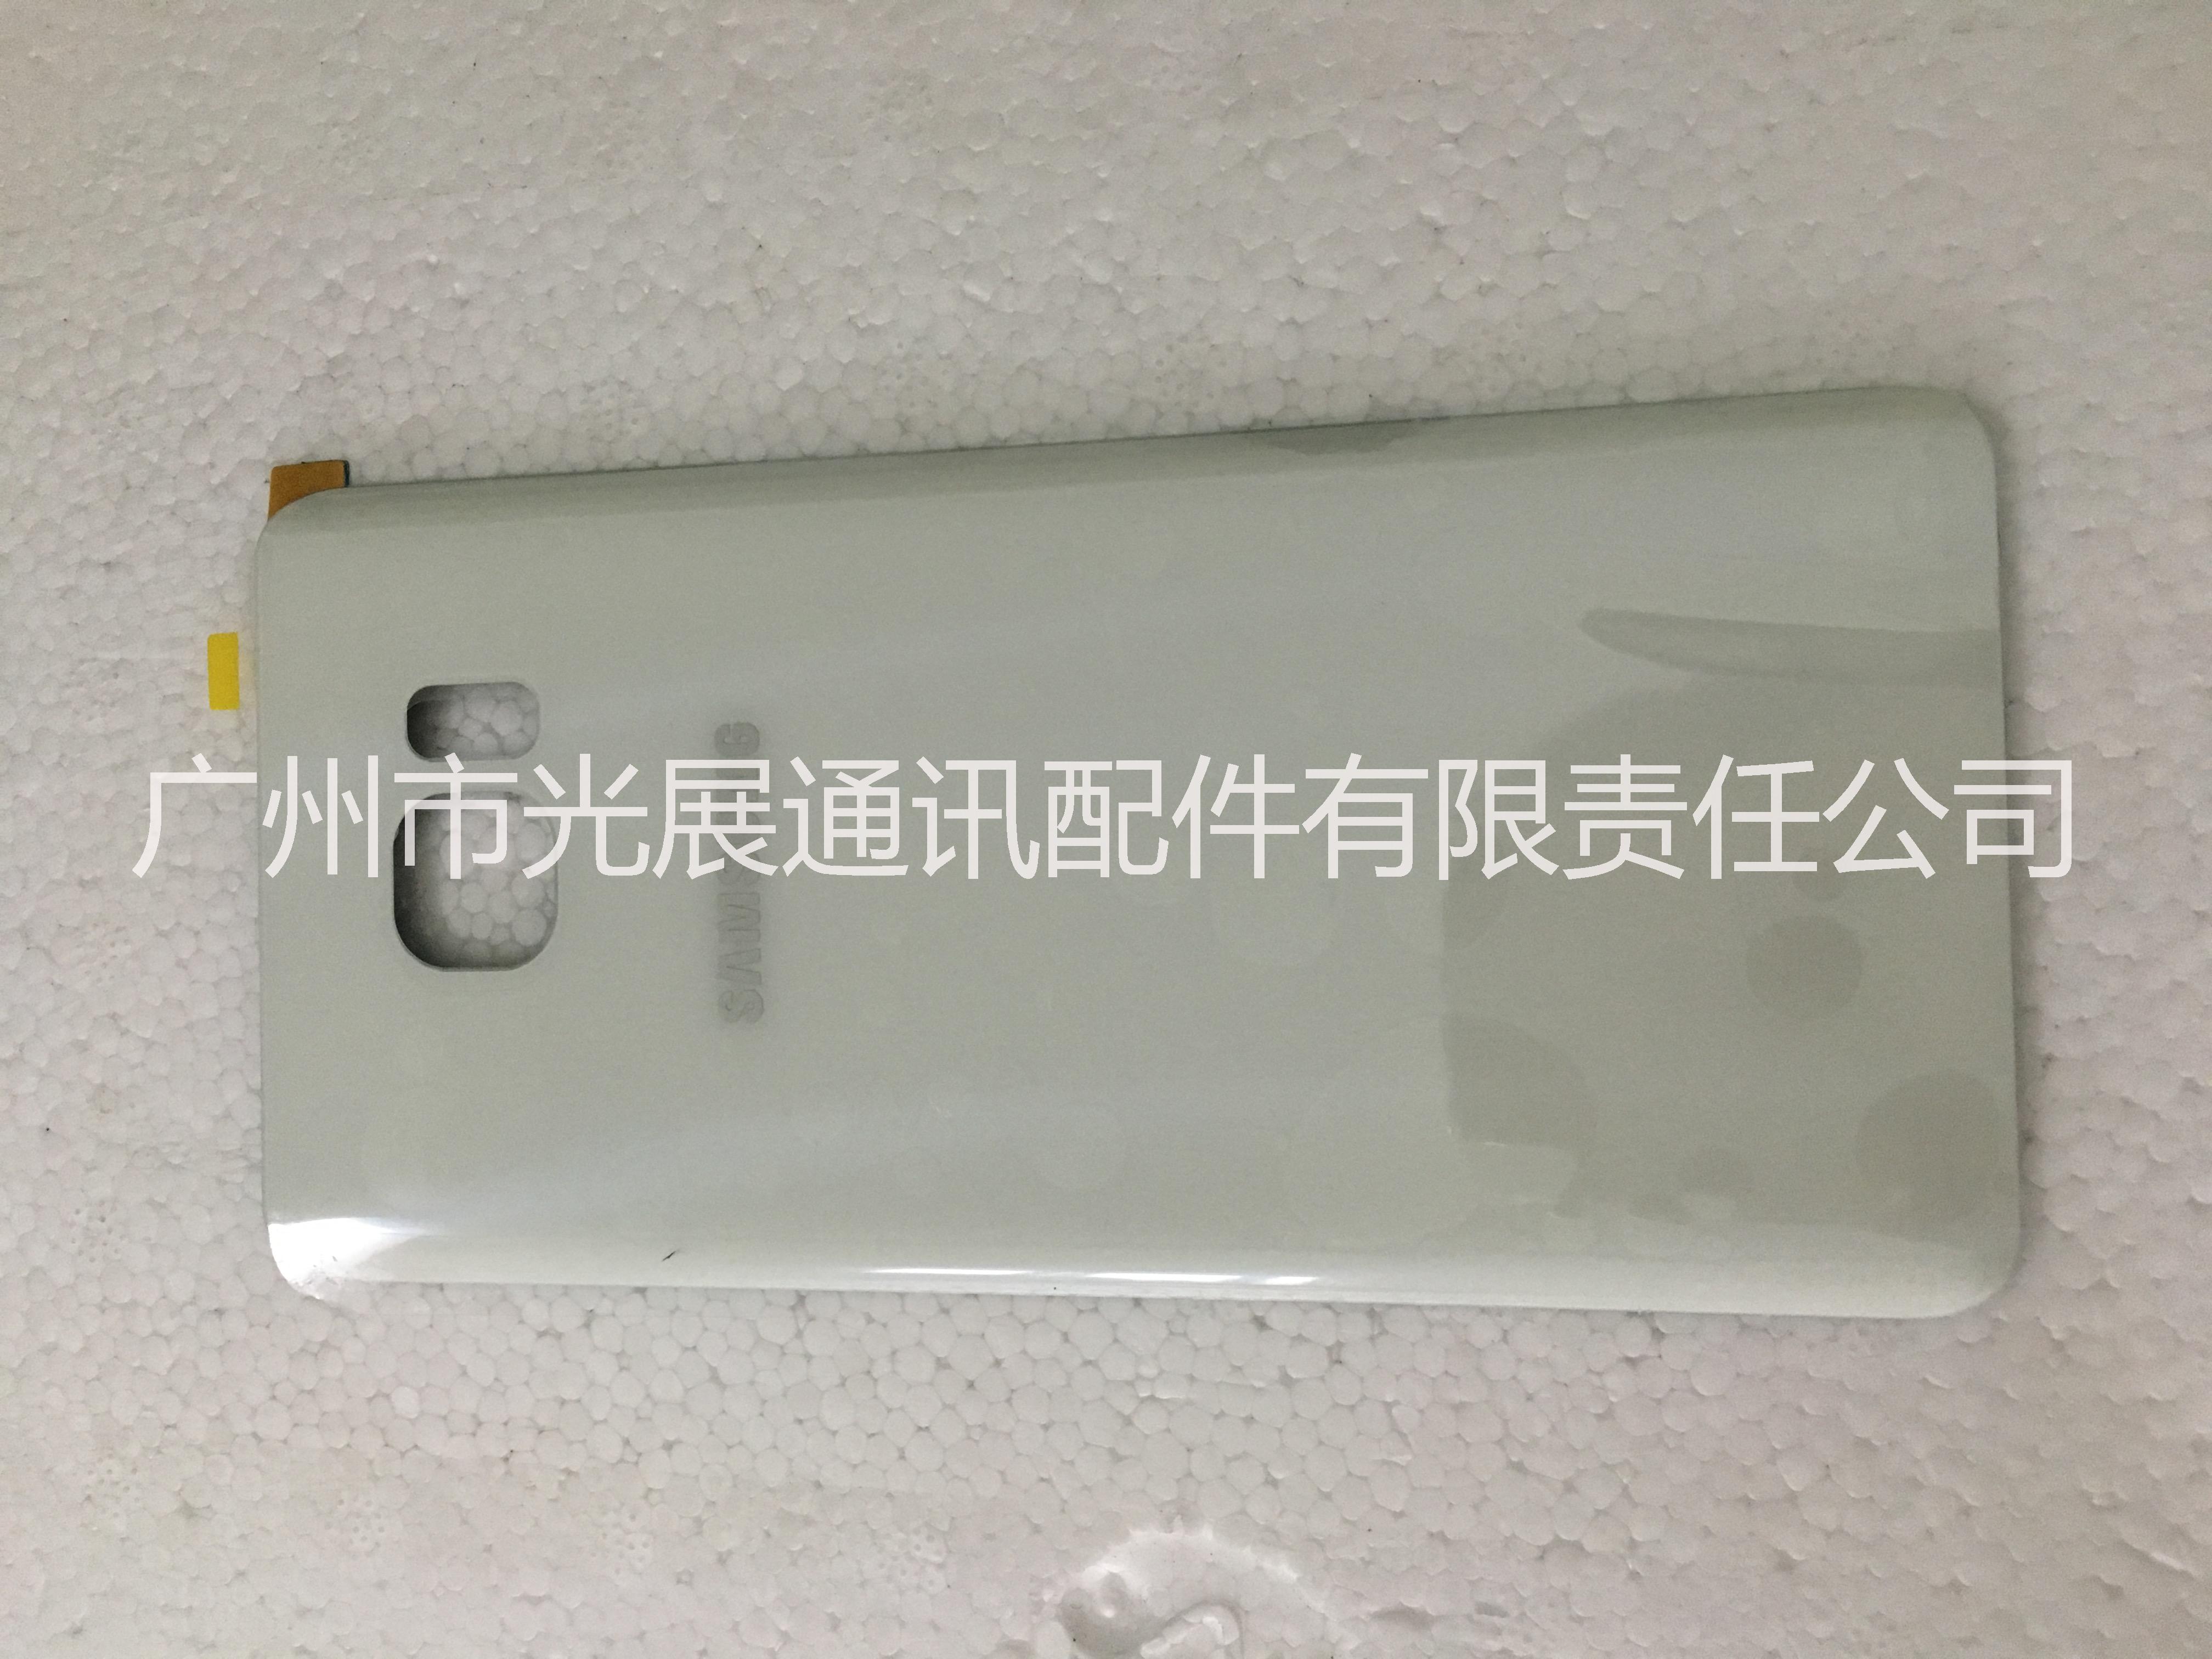 厂家直销批发零售 三星手机电池盖Note5原装后盖 价格优惠